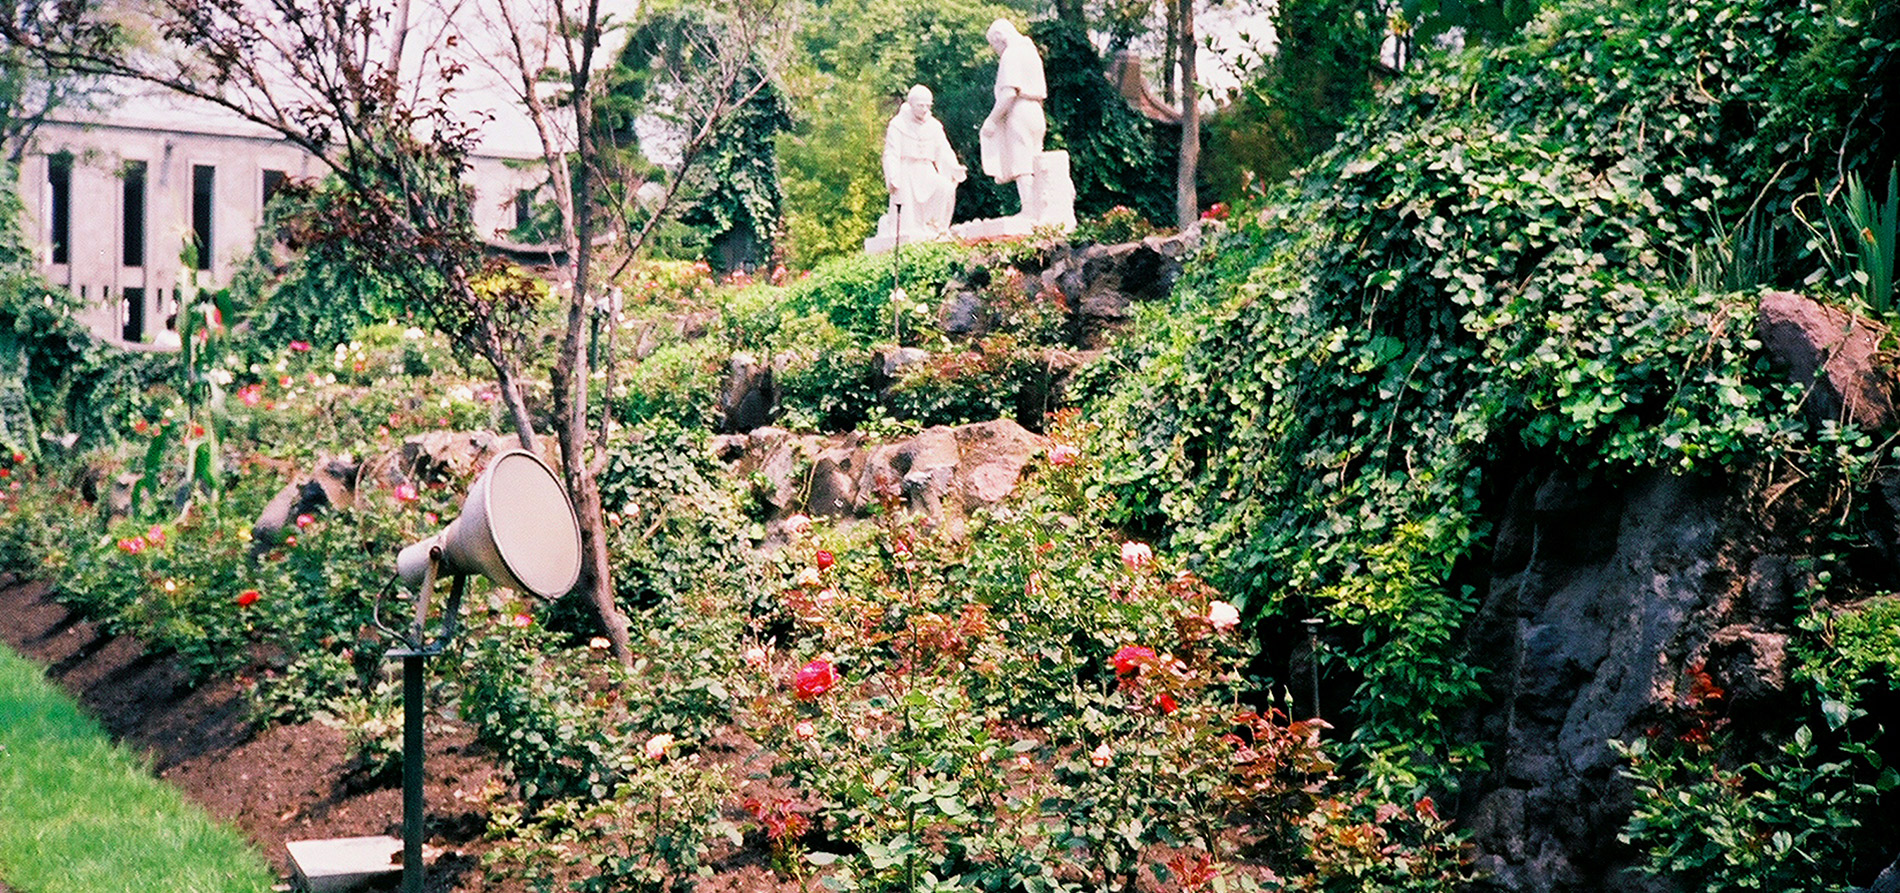 International Peace Garden